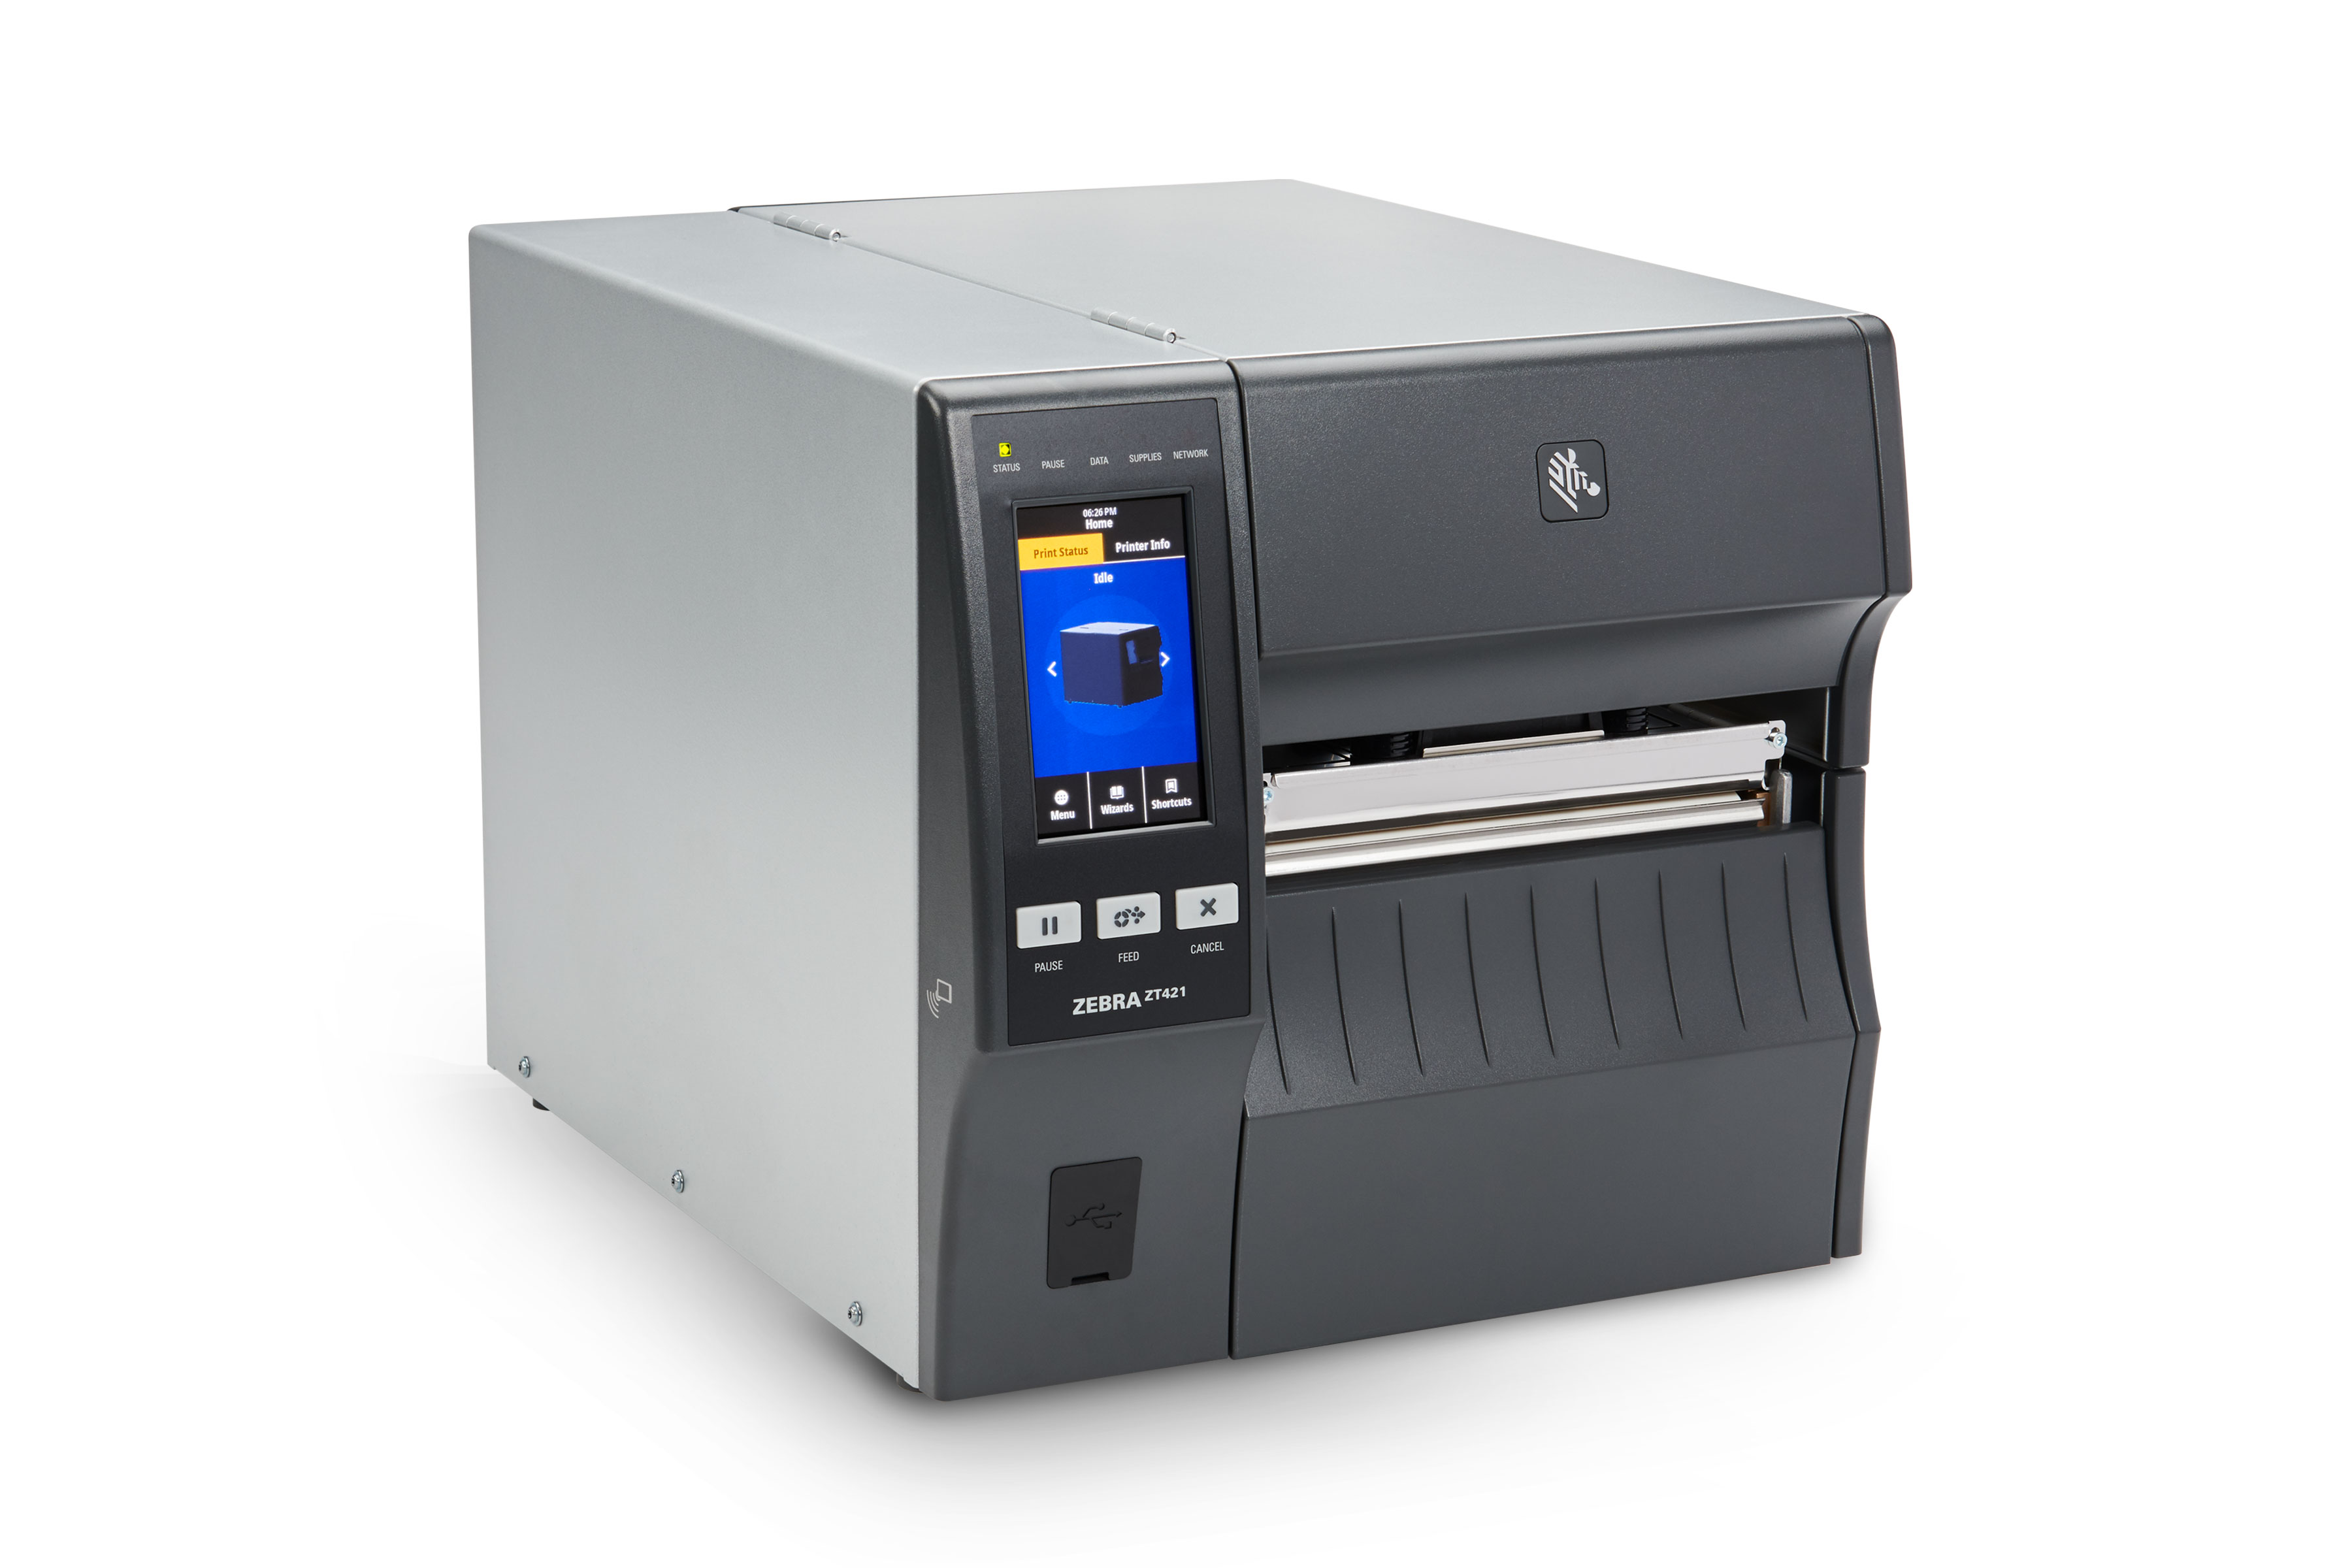 Zebra ZT421 industrial printer